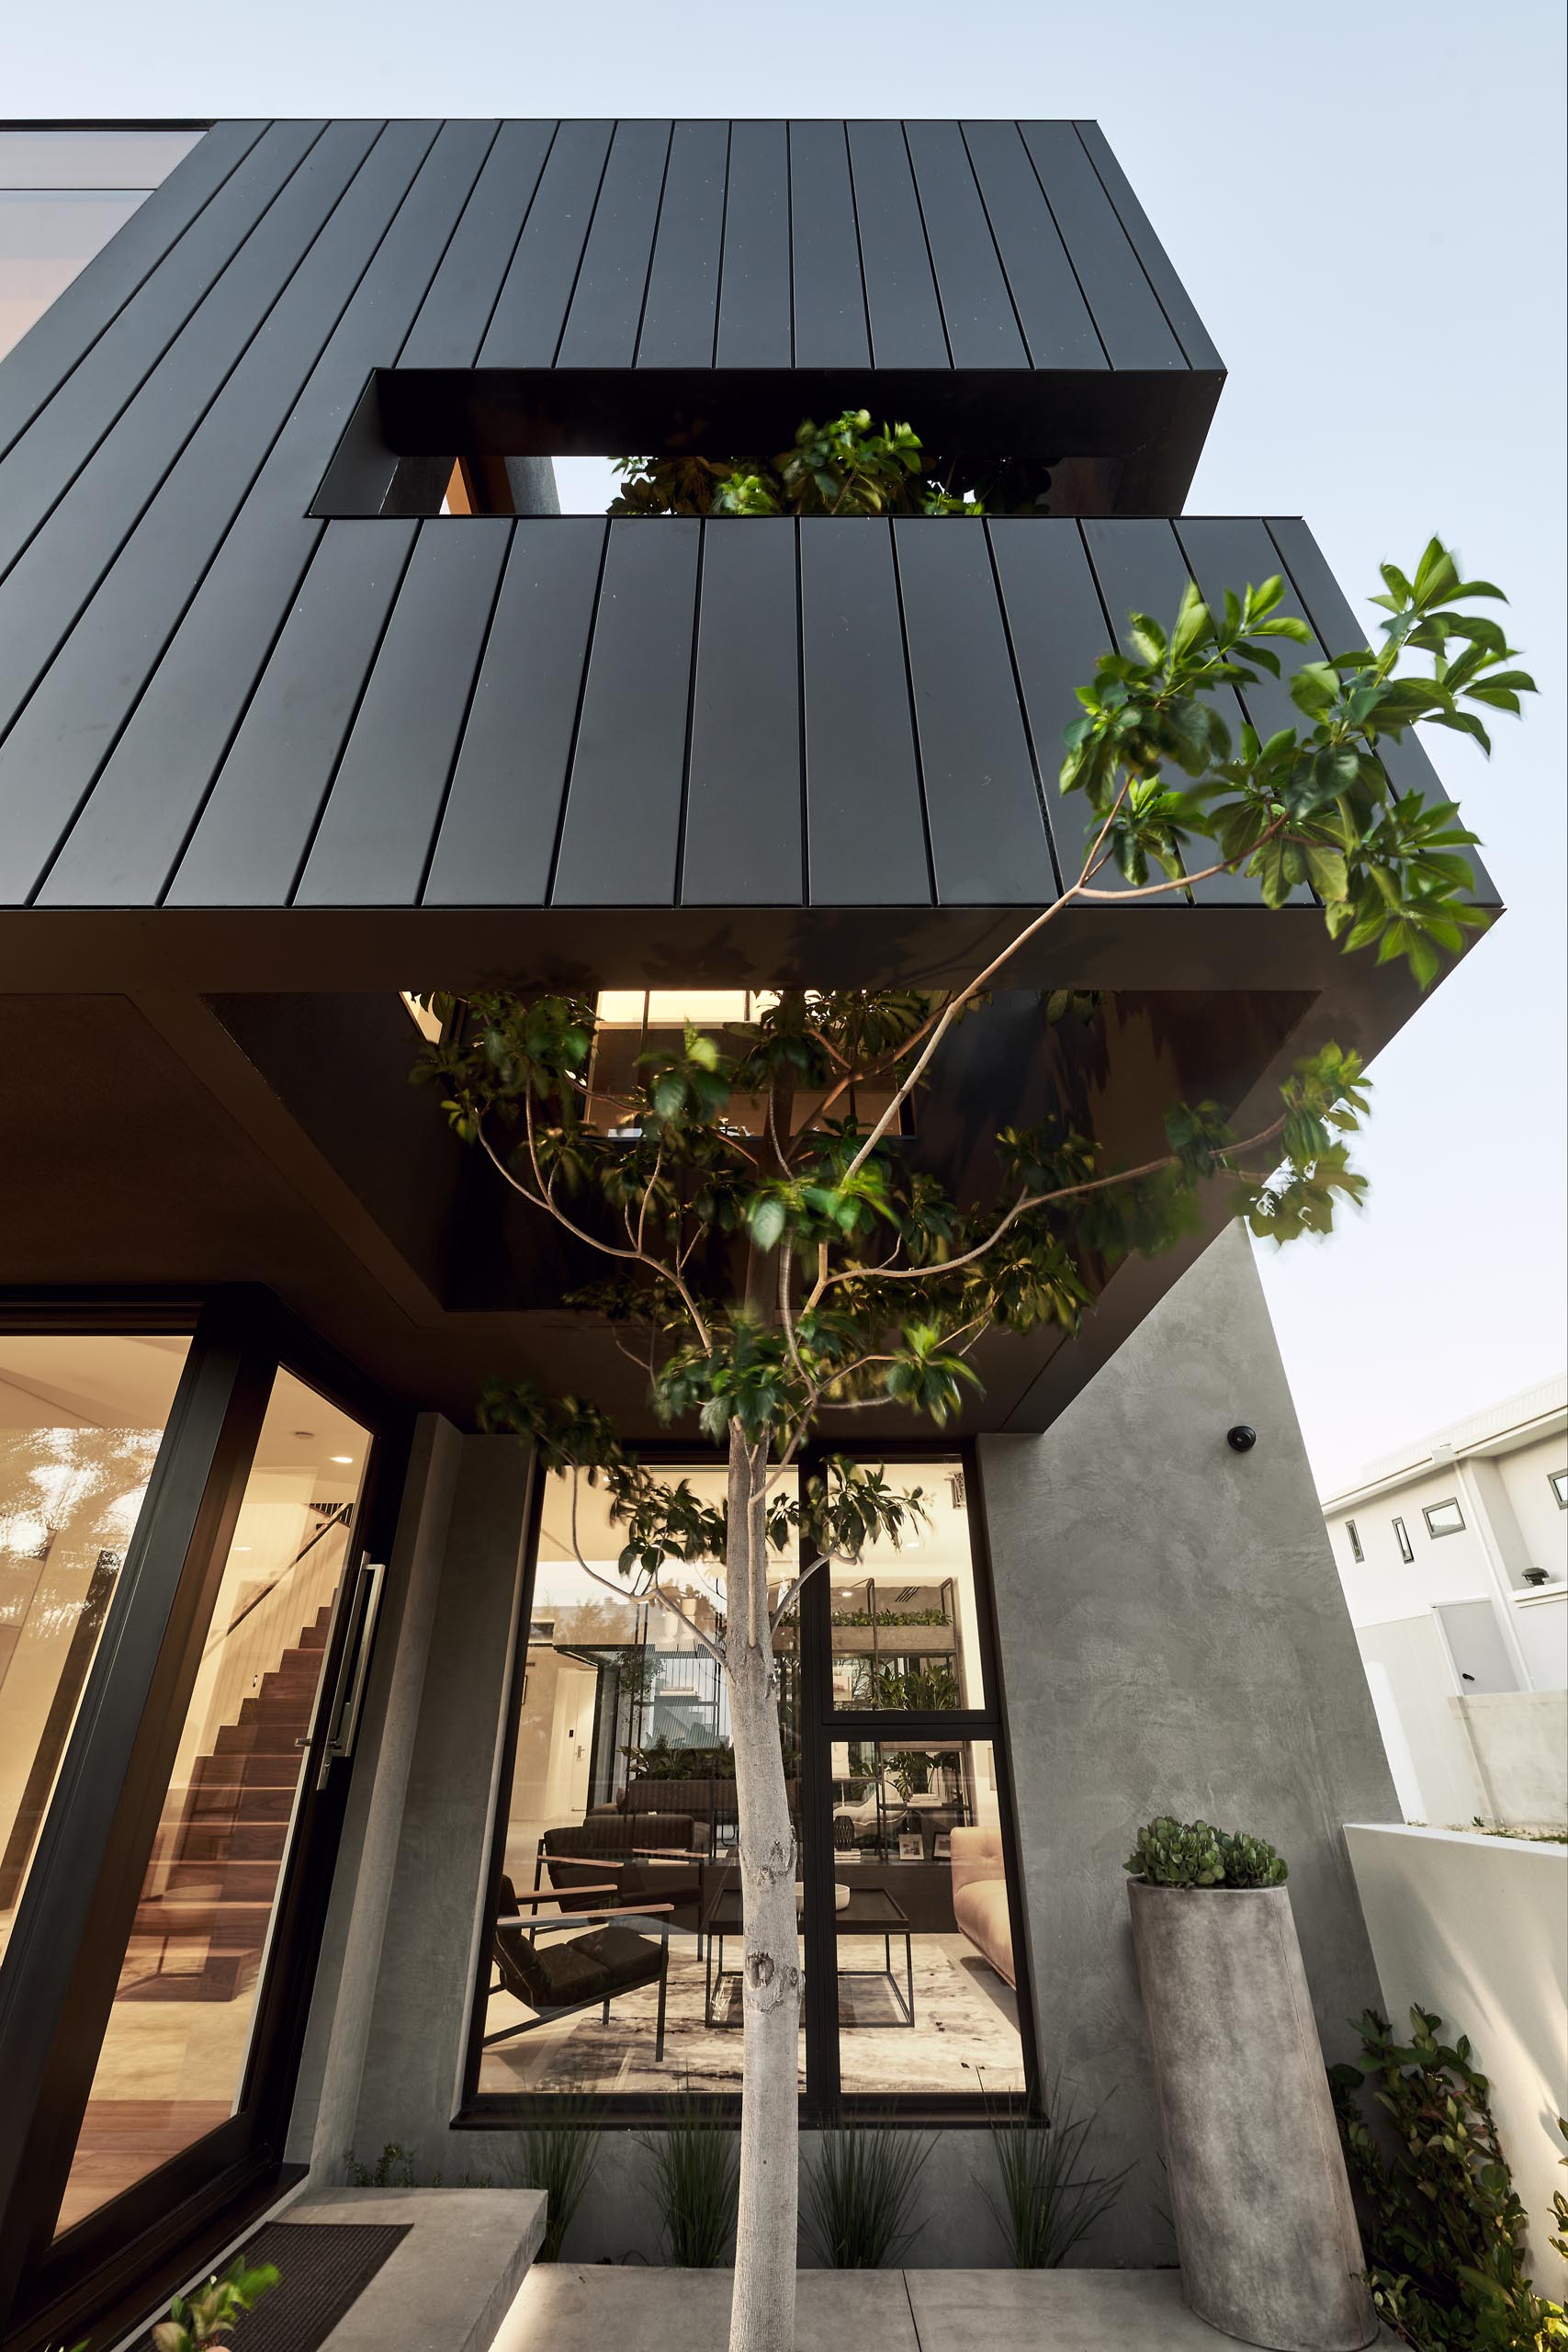 В матовой черной обшивке этого современного дома есть отверстие, через которое дерево может вырасти изнутри.